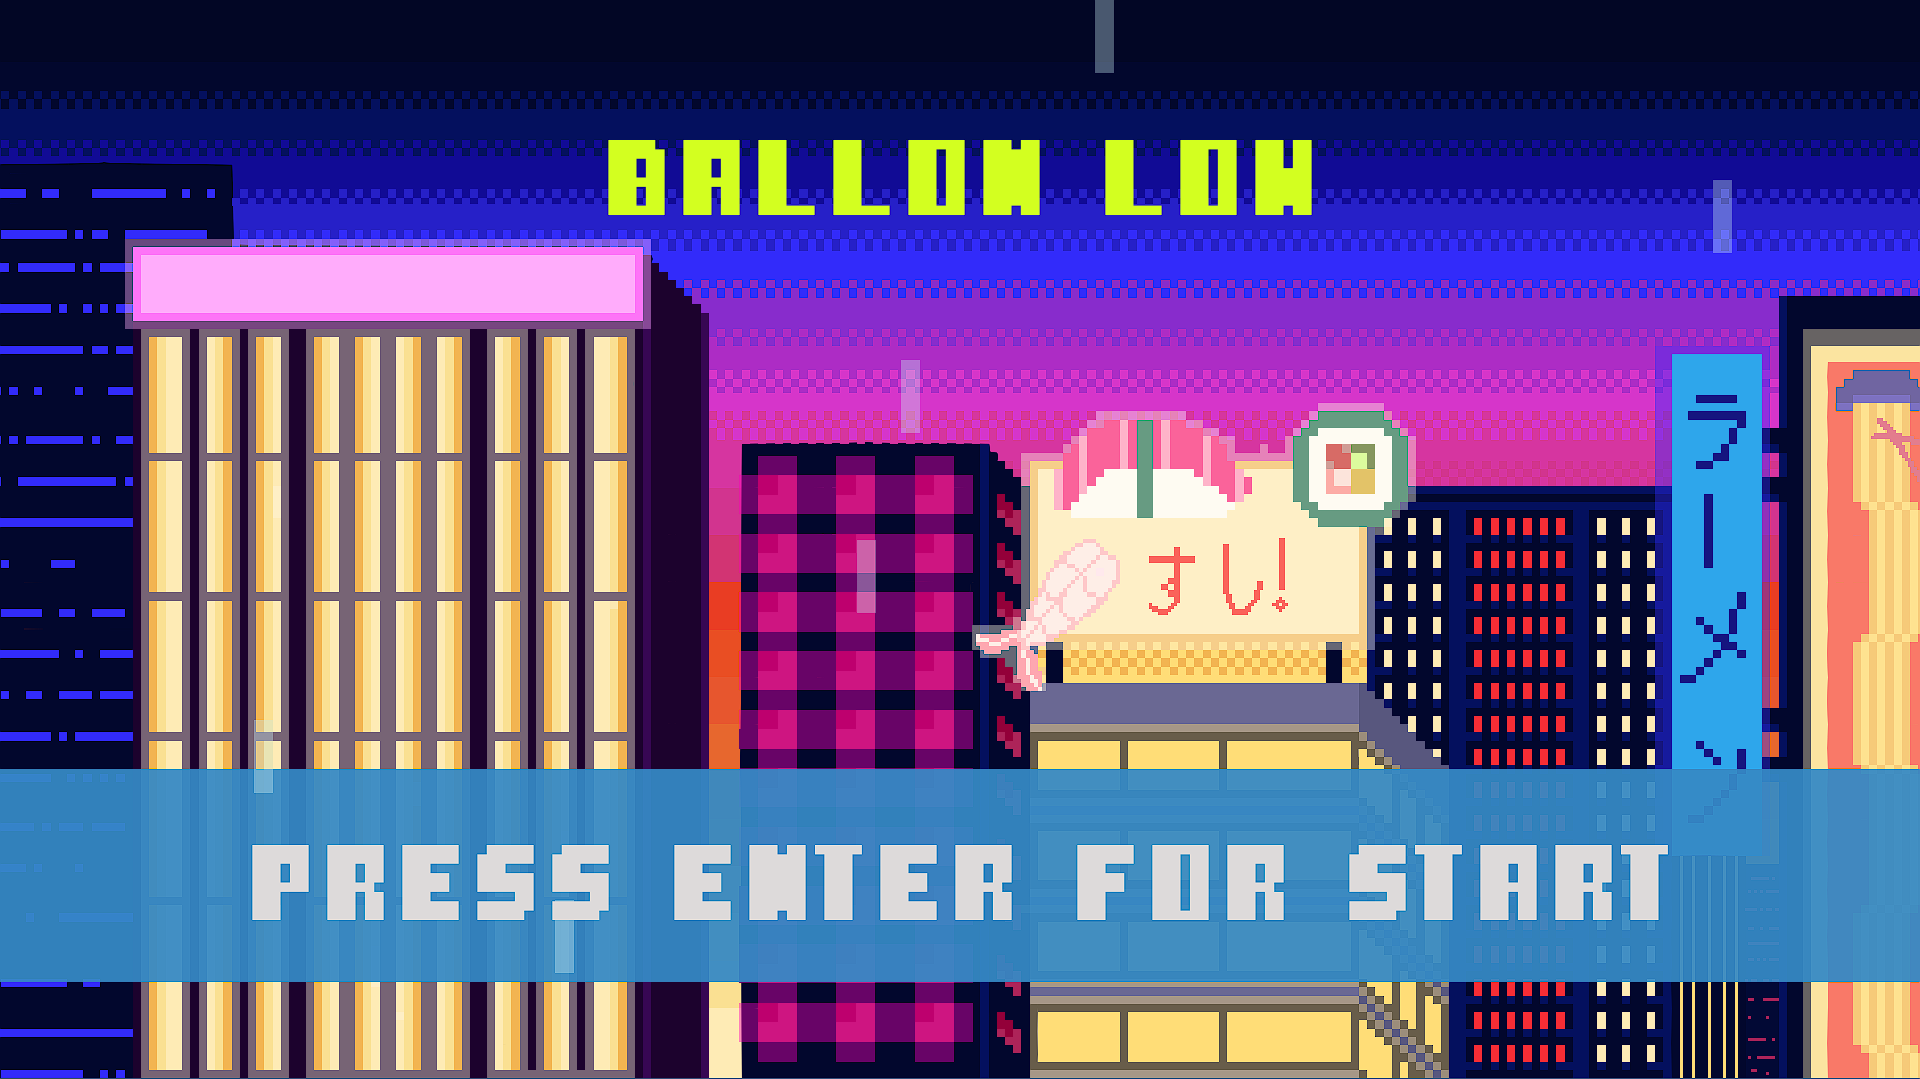 Ballon Low